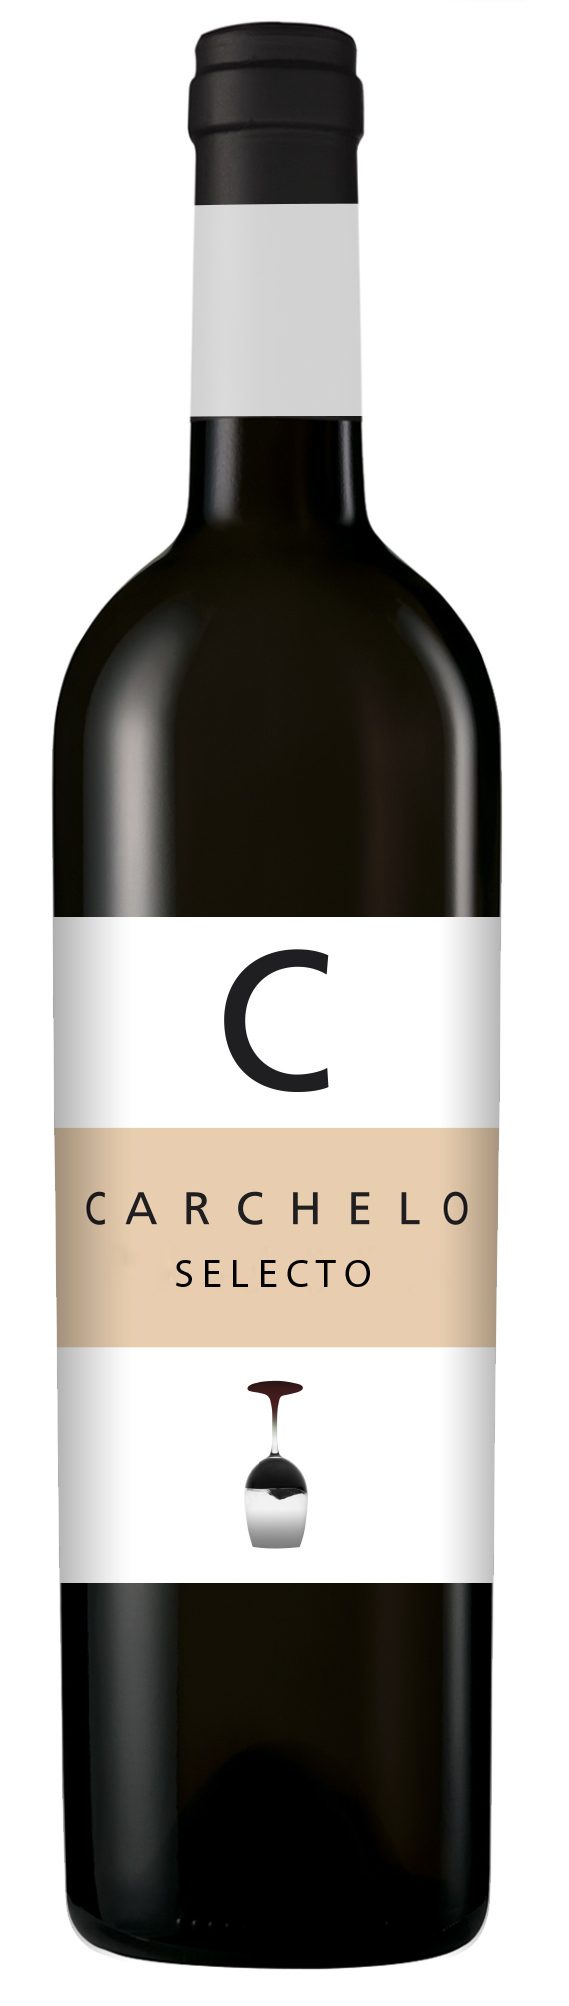 Carchelo Selecto 2012 está entre los cinco mejores vinos del mundo